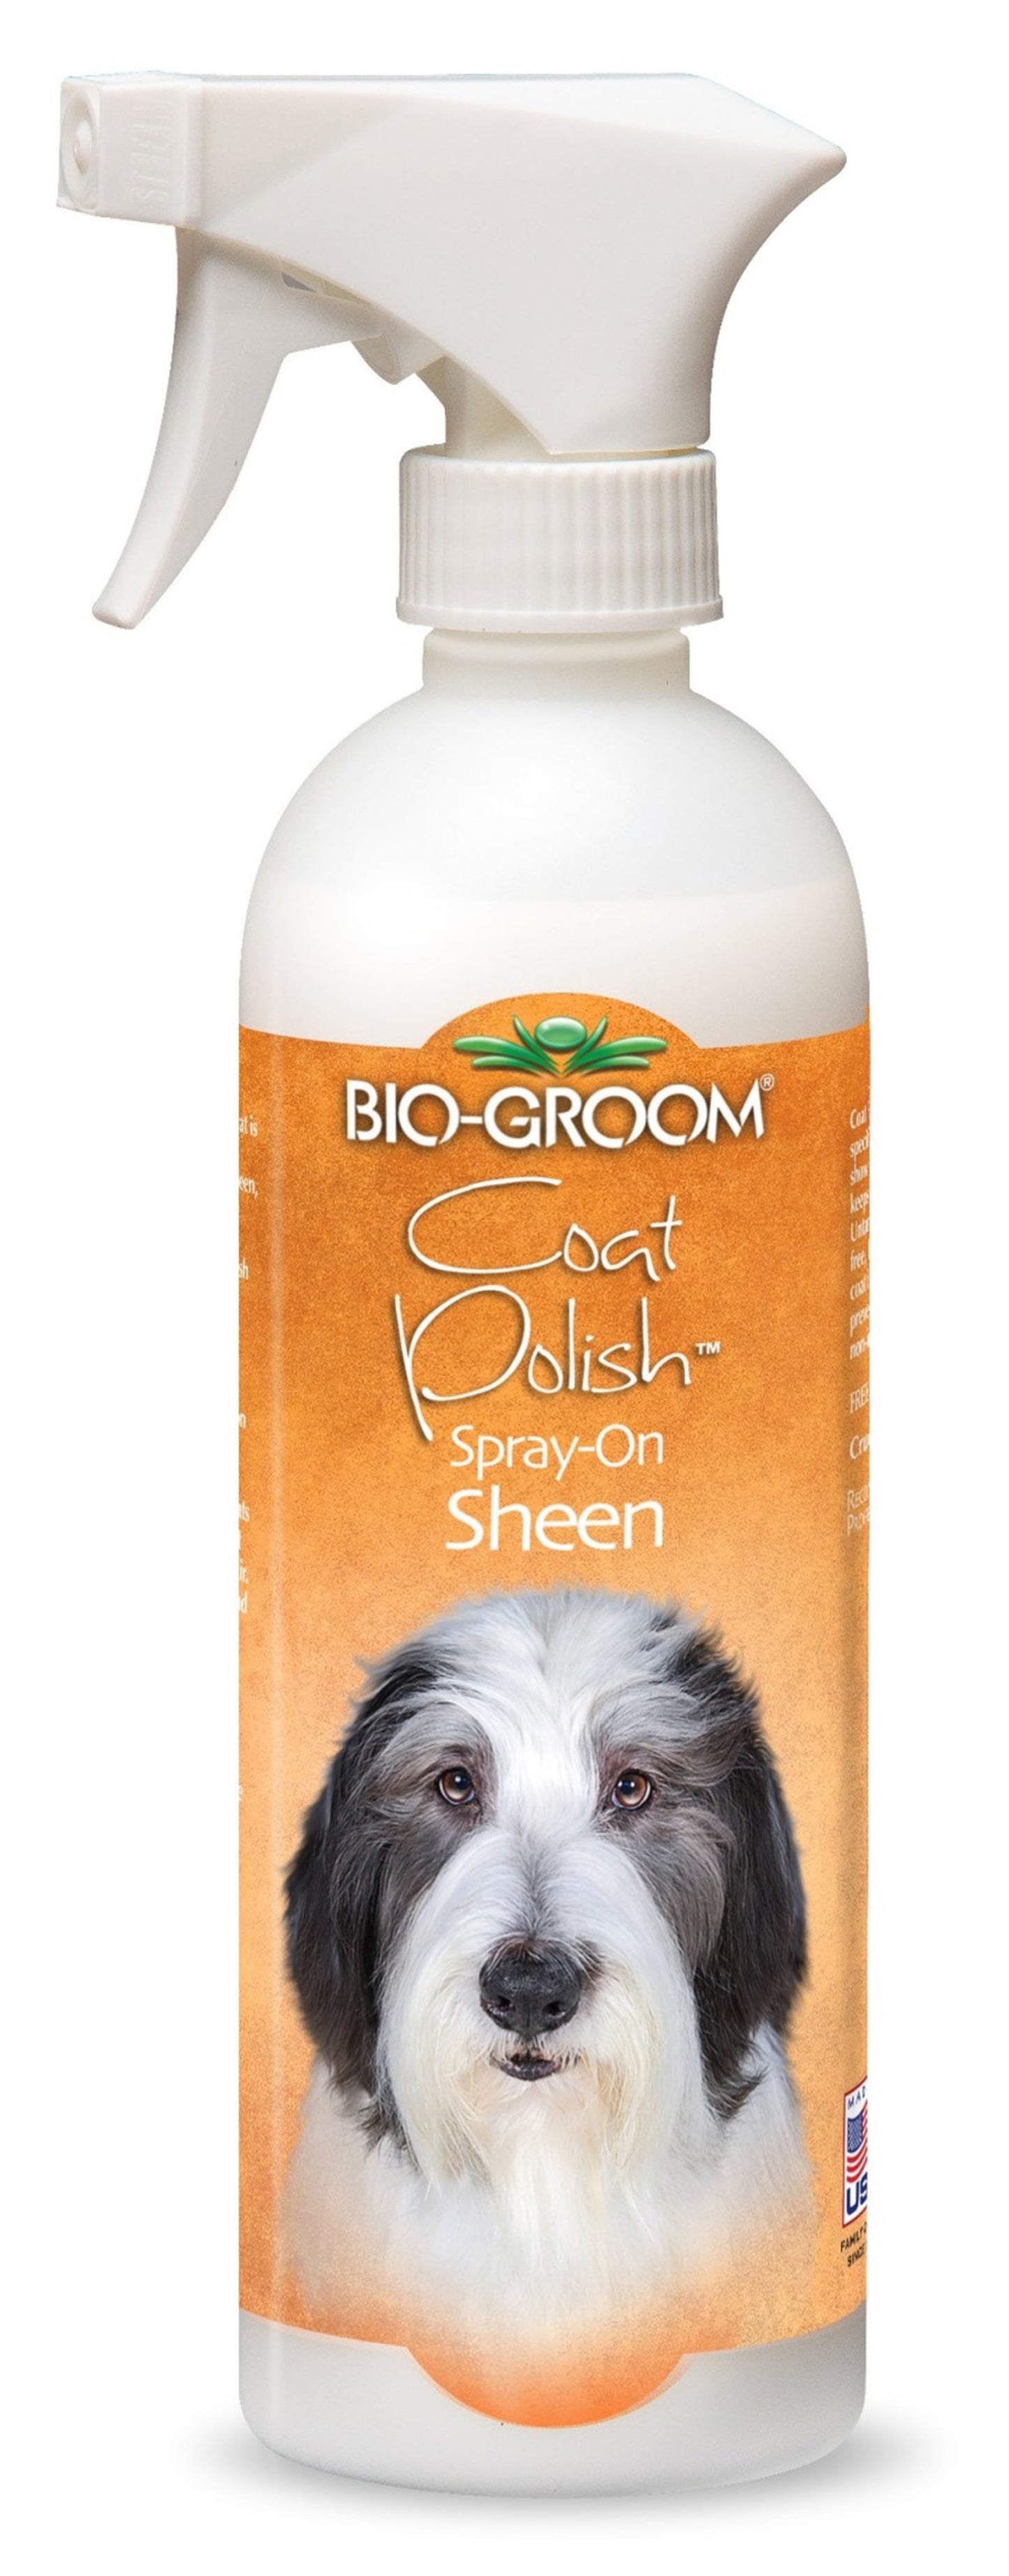 Bio Groom Coat Polish Spray-On Sheen 1ea/16 oz